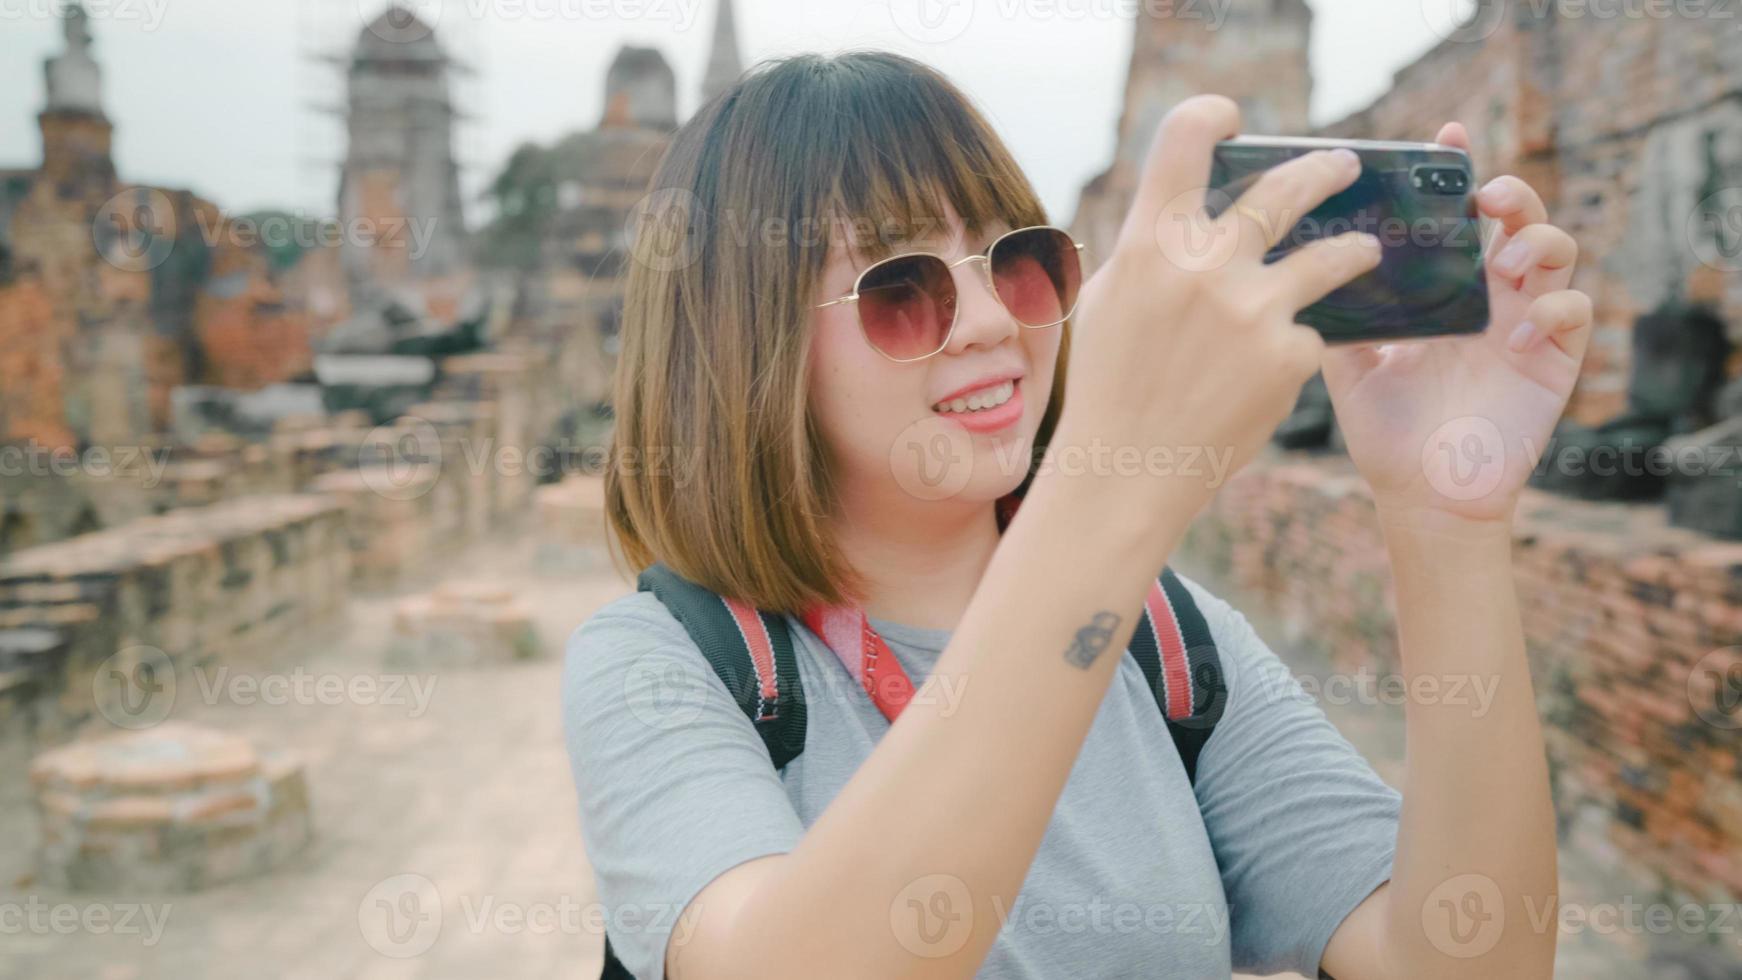 reiziger aziatische vrouw die smartphone gebruikt om een foto te maken terwijl ze een vakantiereis doorbrengt in ayutthaya, thailand, vrouw geniet van haar reis op een geweldig oriëntatiepunt in de traditionele stad.